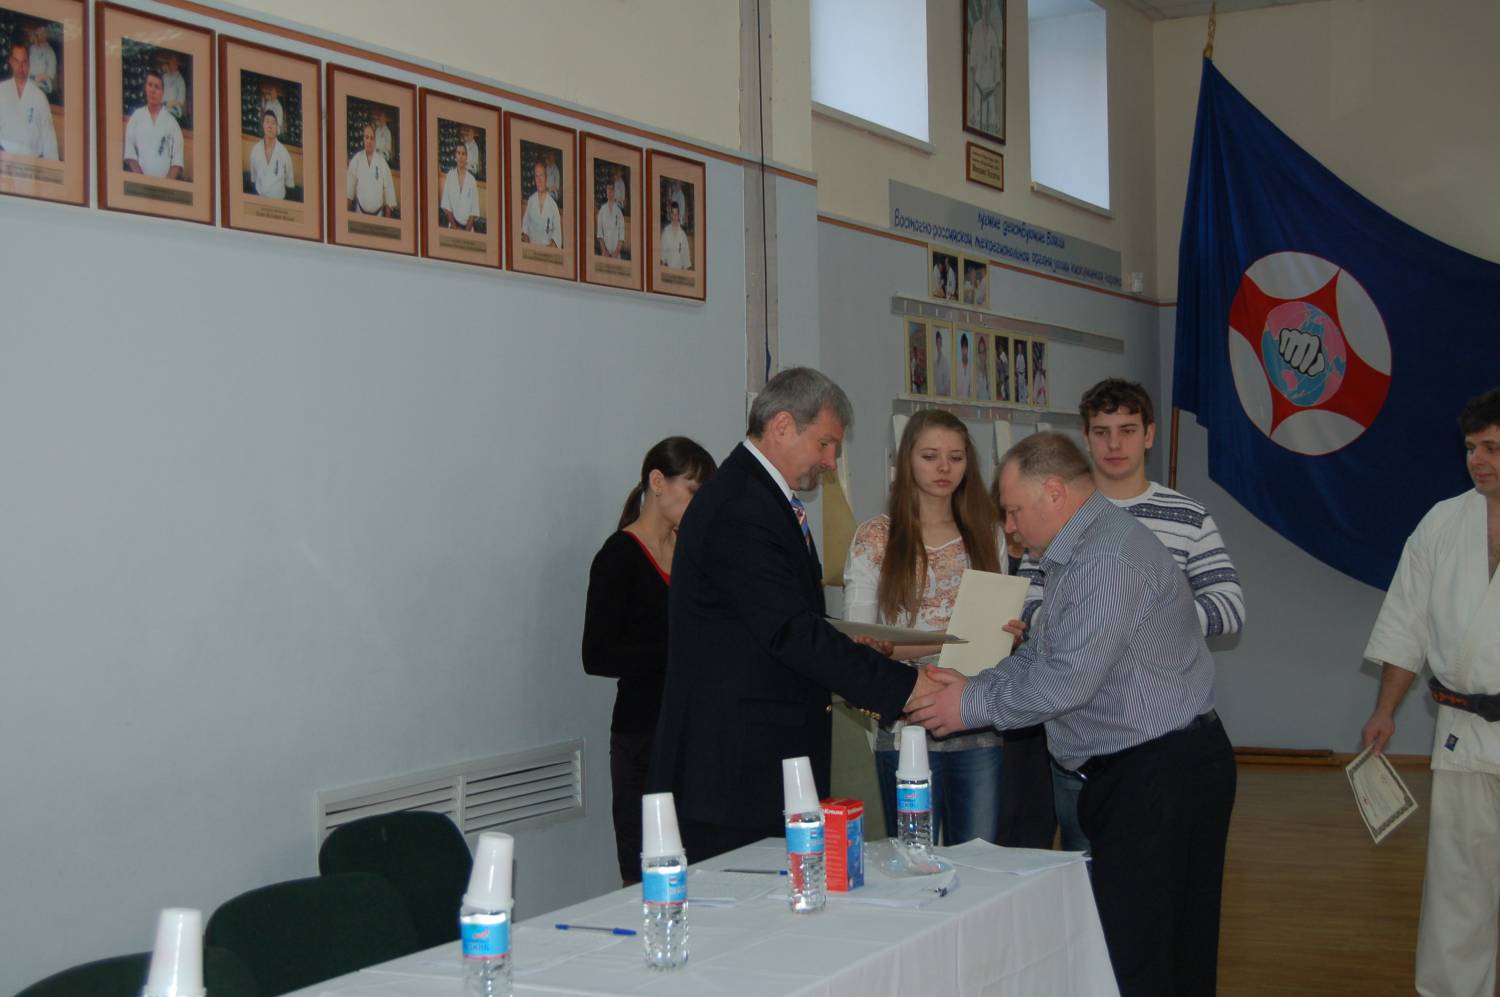 Дан тесты в Хабаровске 2013.